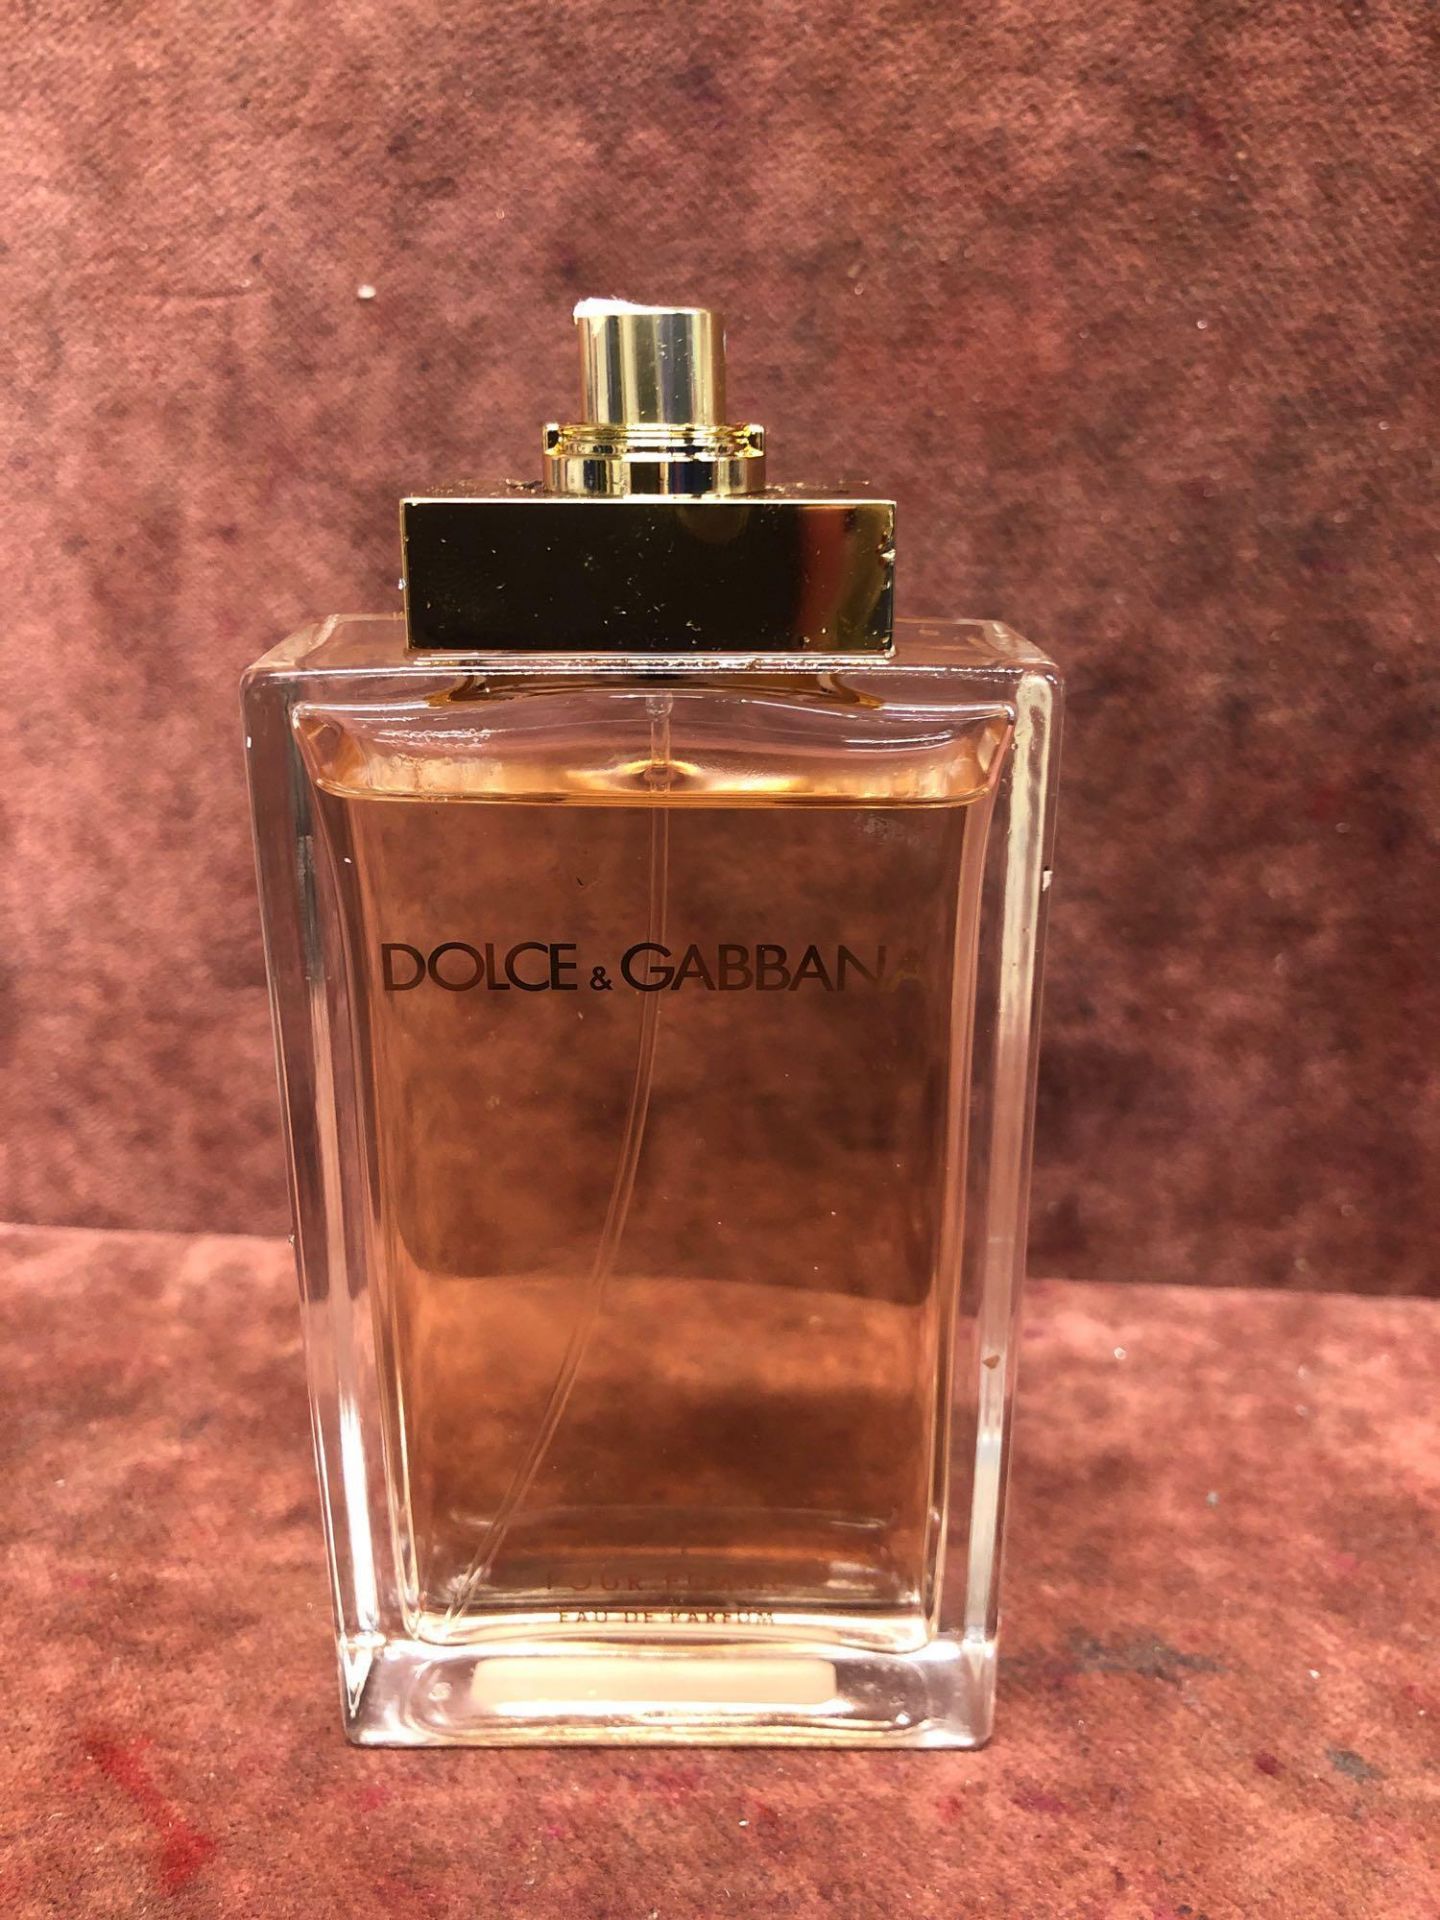 (Jb) RRP £85 Unboxed 100Ml Tester Bottle Of Dolce And Gabbana Pour Femme Eau De Parfum Spray Ex-Disp